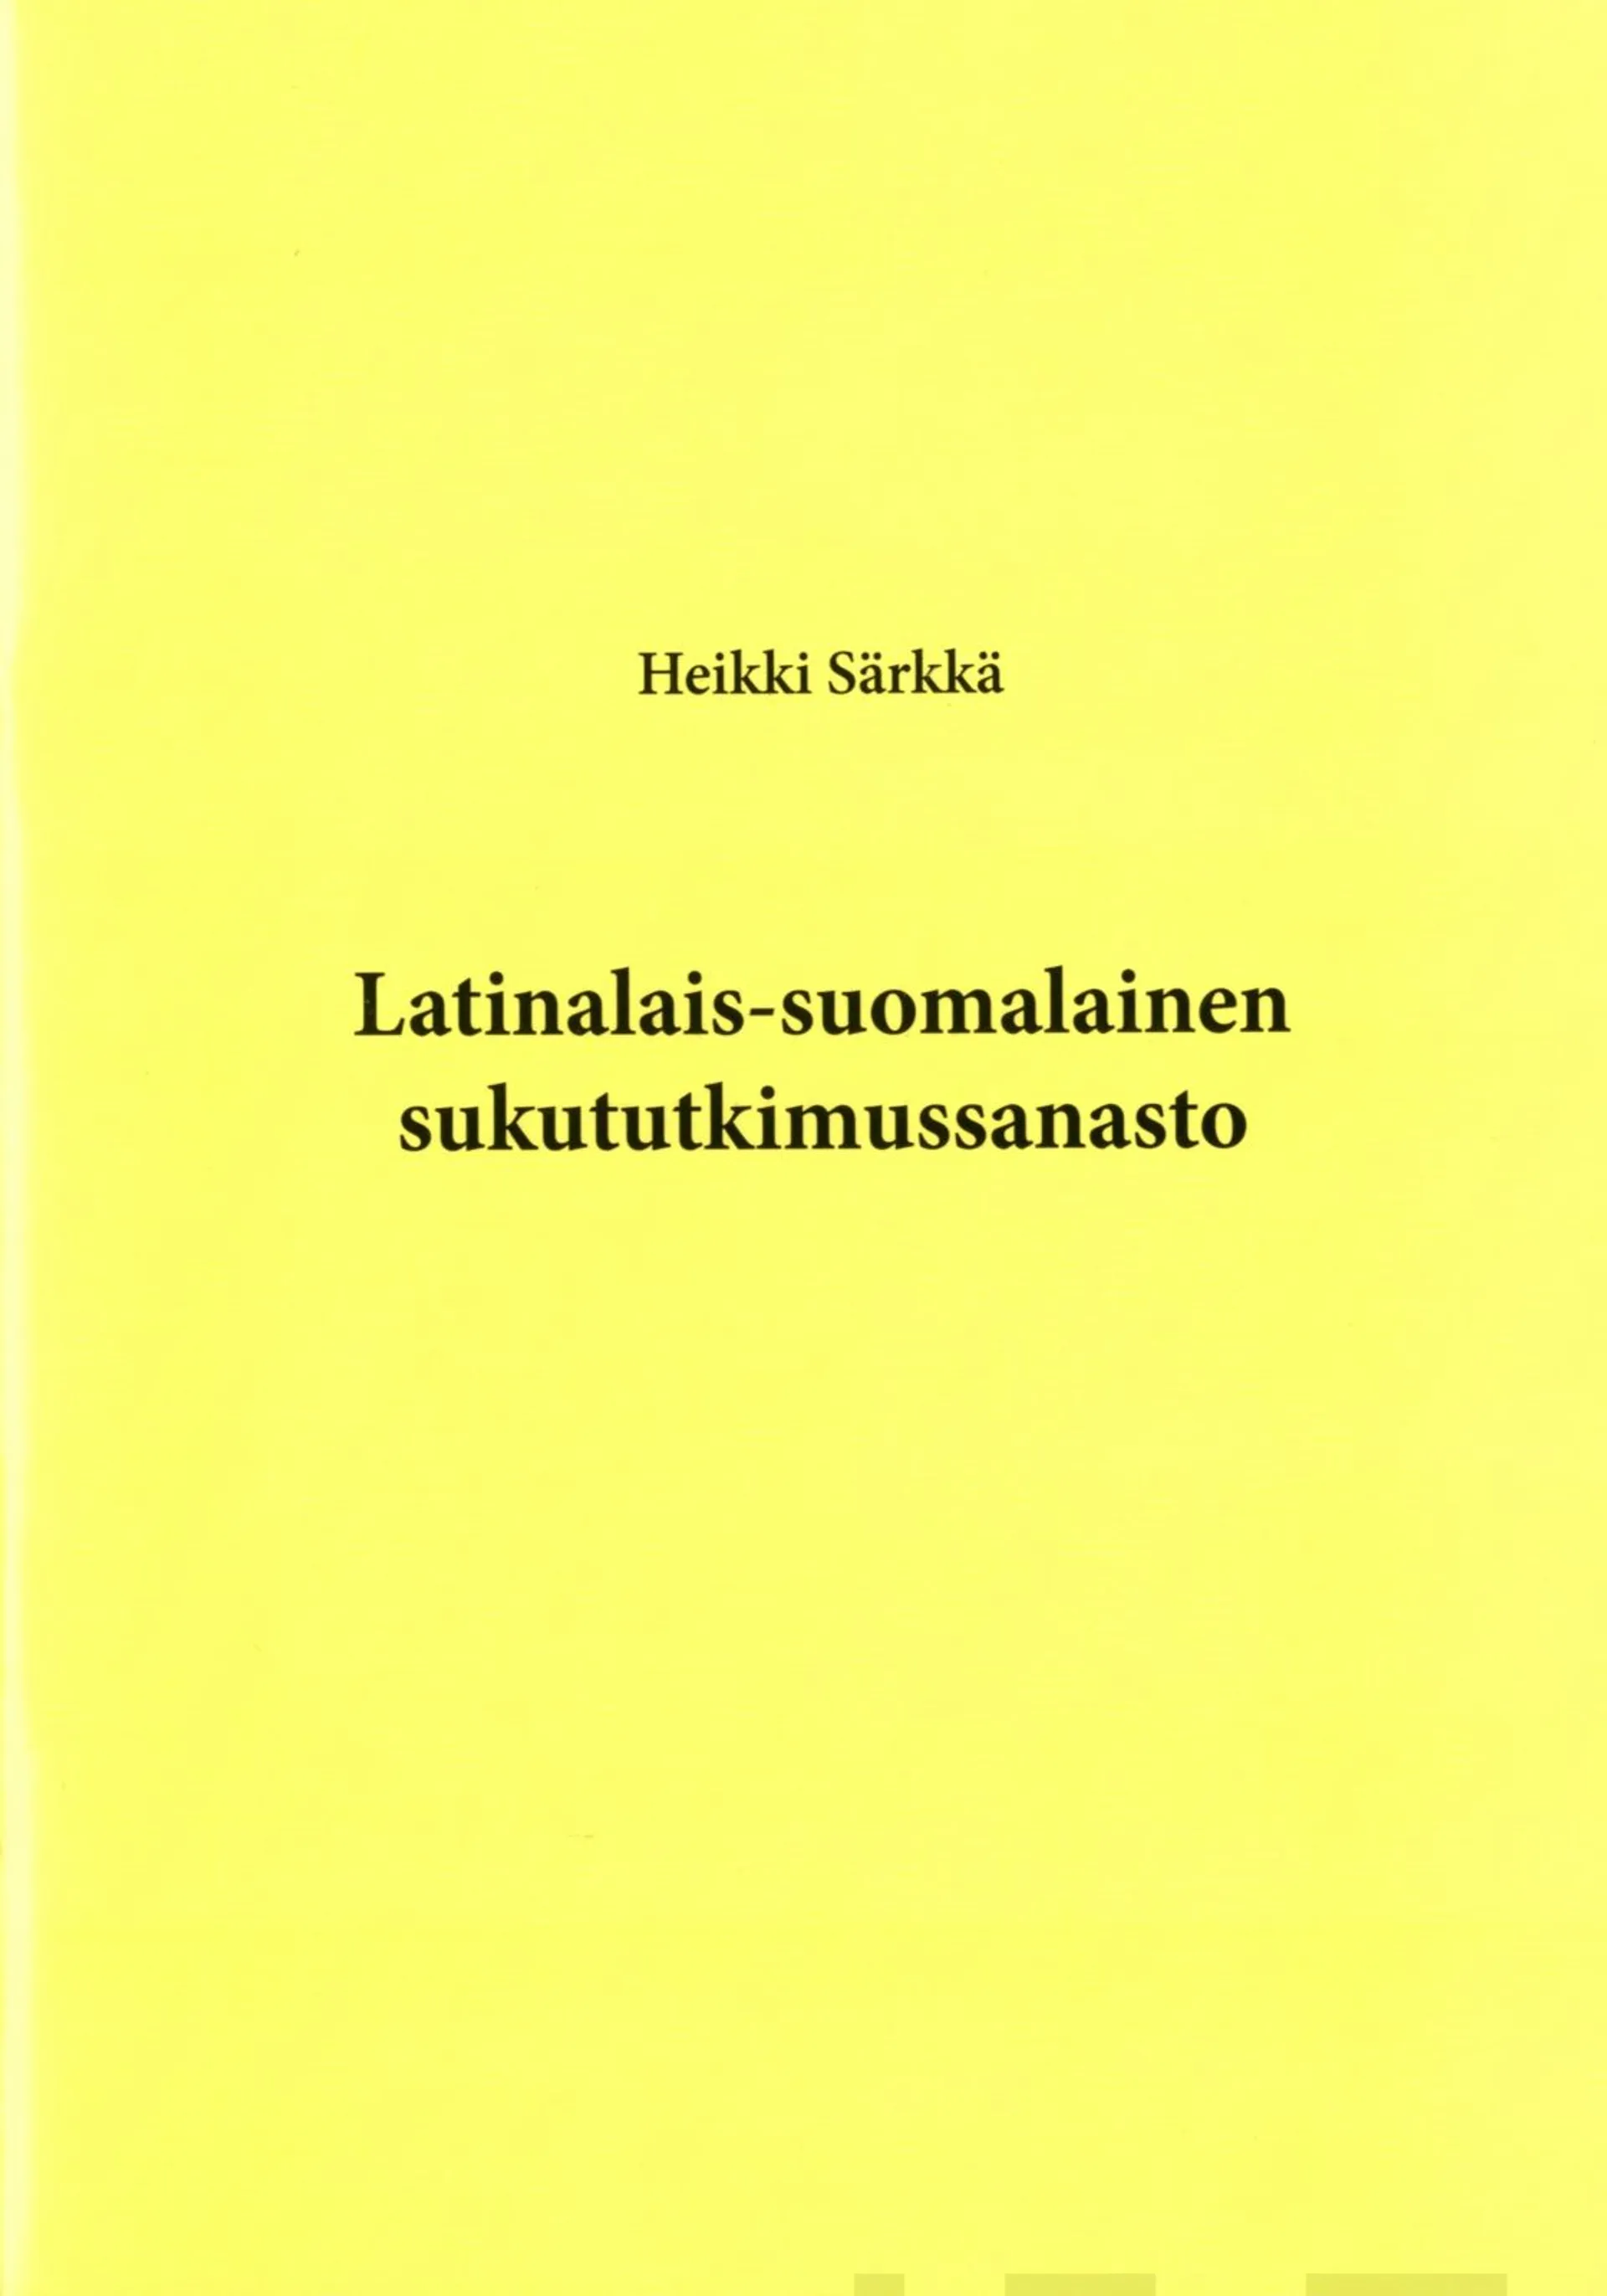 Särkkä, Latinalais-suomalainen sukututkimussanasto